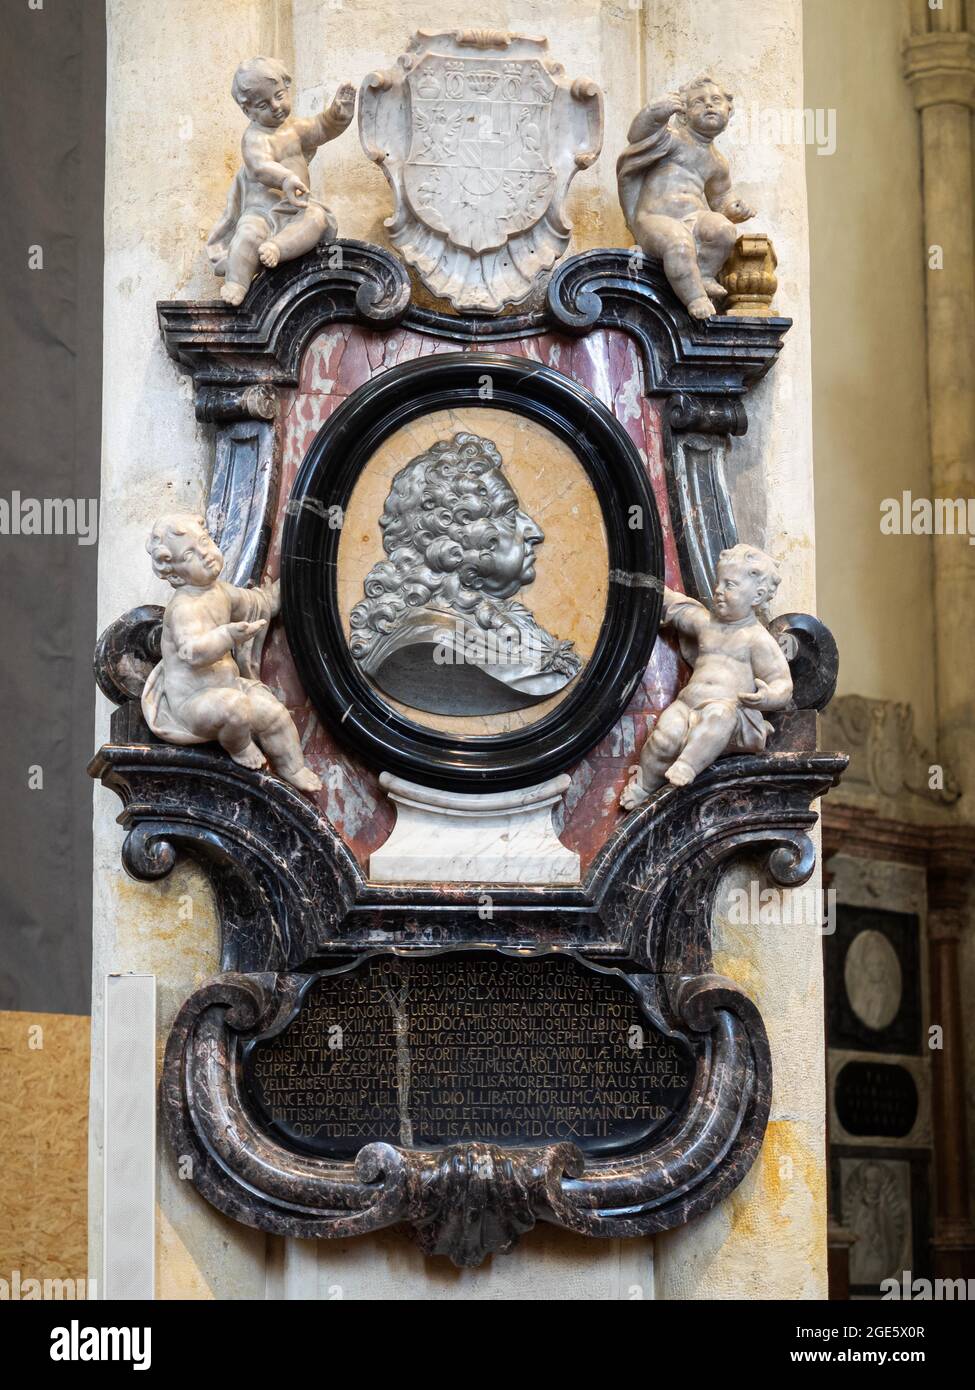 Épitaphe du Comte Johann Caspar von Cobenzl, par le sculpteur baroque Georg Raphael donner, Cathédrale de Graz, Graz, Styrie, Autriche Banque D'Images